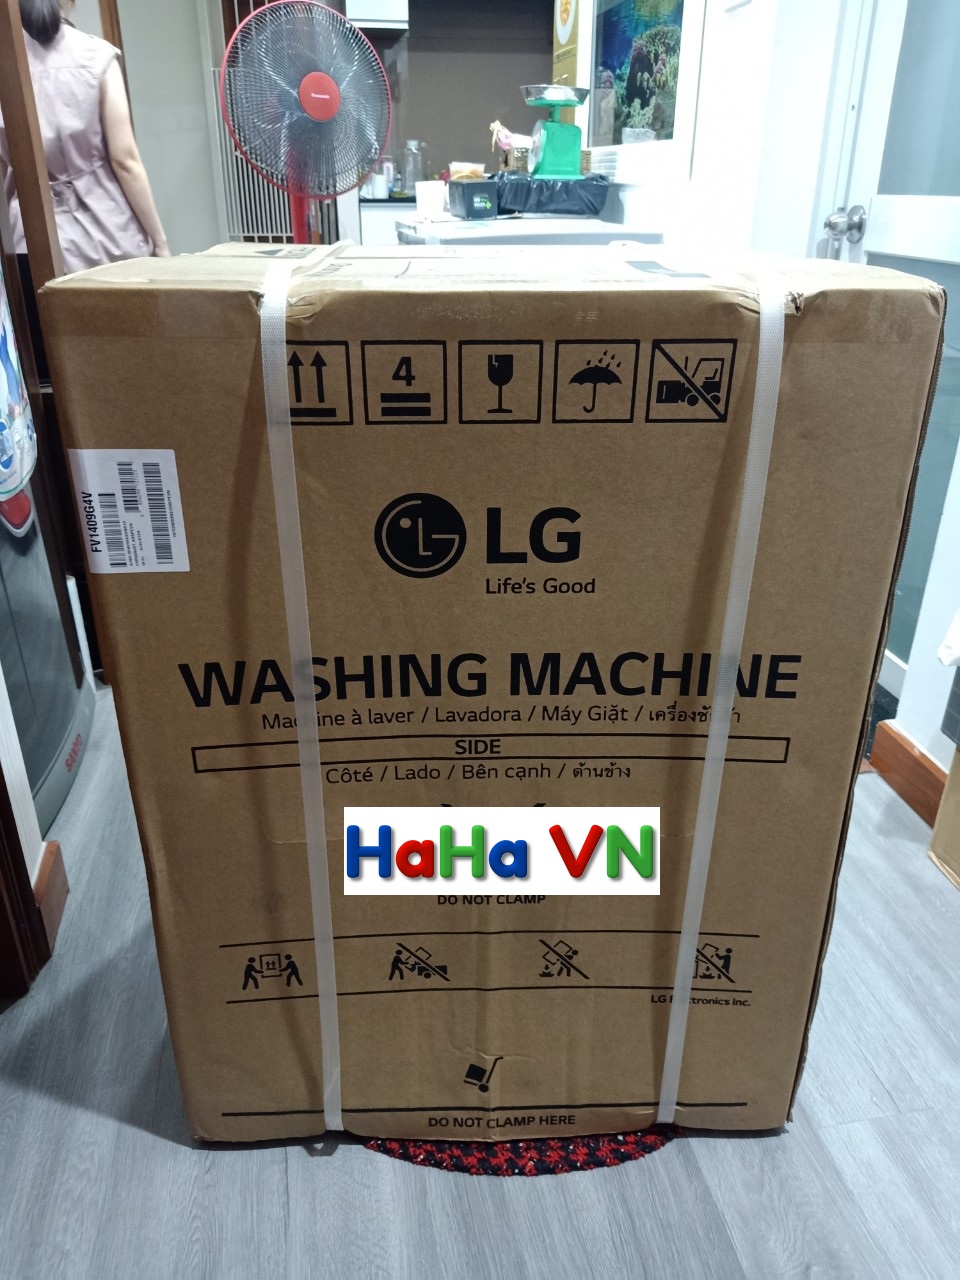 FV1409G4V | Máy giặt sấy LG FV1409G4V Inverter 9 kg | HaHa VN